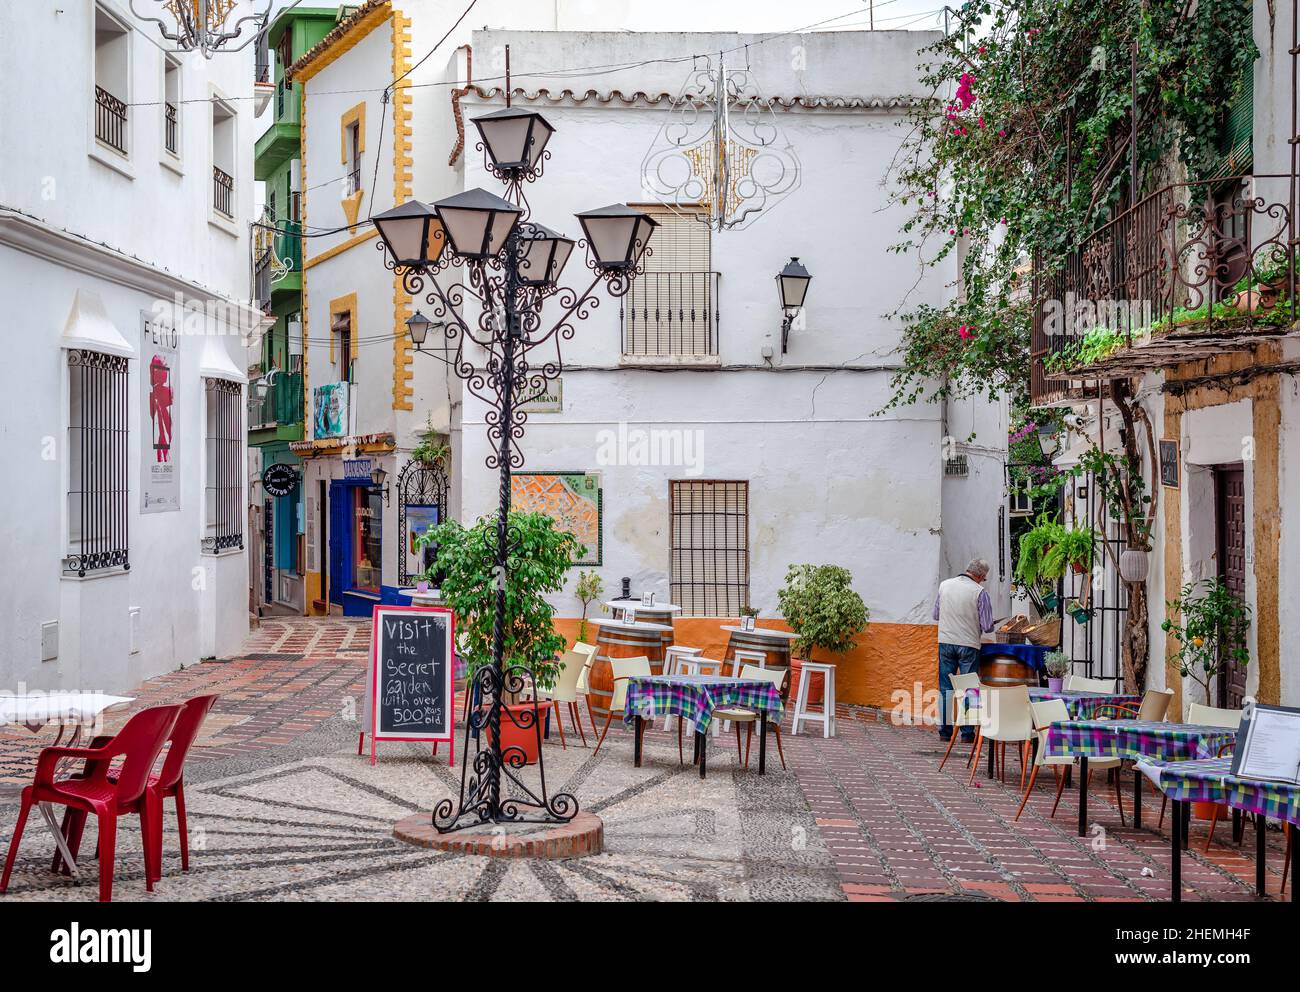 Marbella, Espagne - décembre 21 2014 : vue sur la Plaza Altamirano, une zone piétonne avec bars et restaurants au coeur de la vieille ville. Banque D'Images